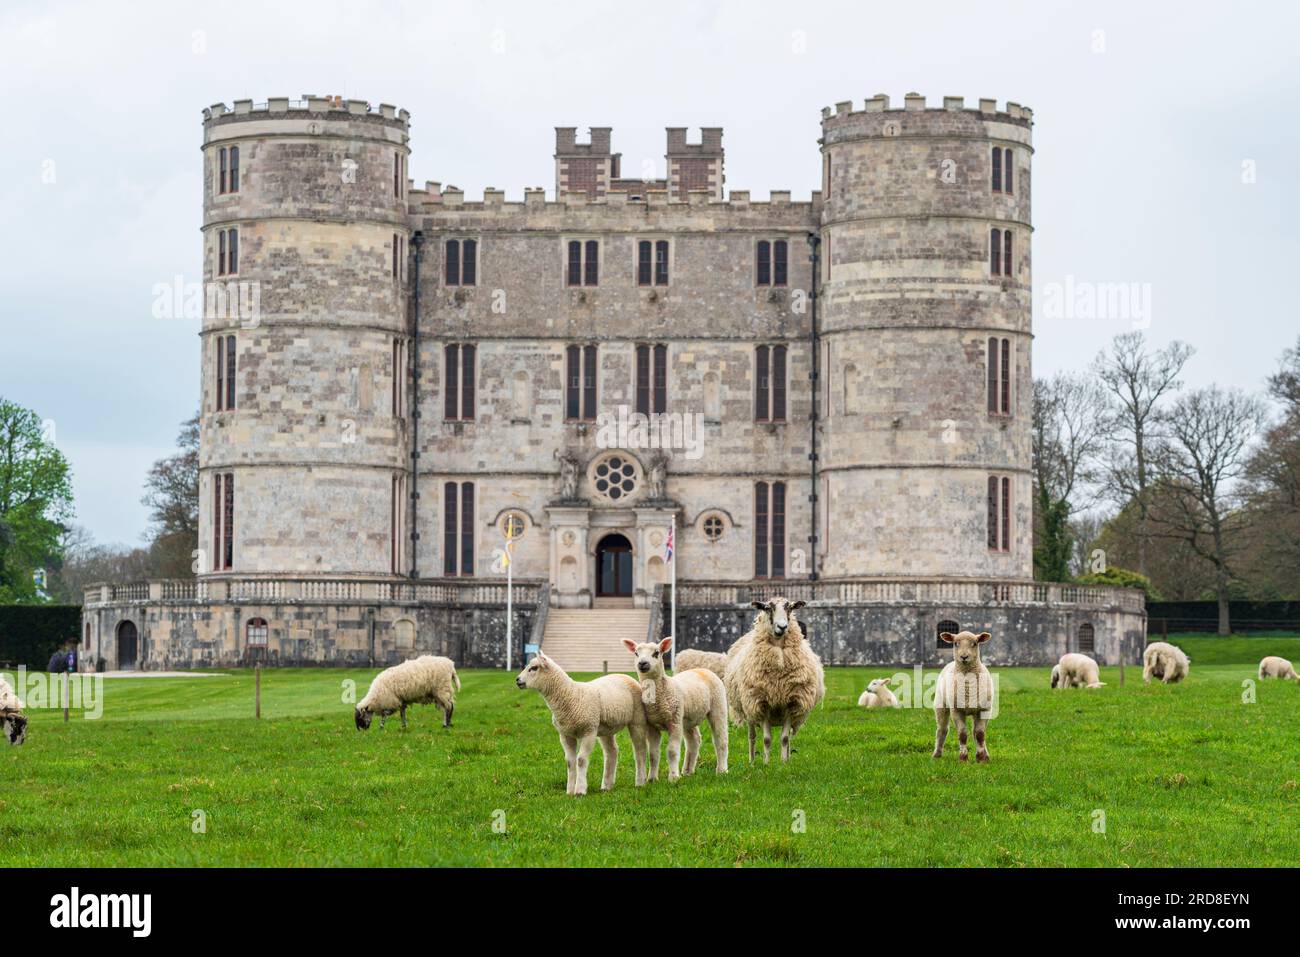 Moutons errant dans les prairies verdoyantes en face du château de Lulworth, Jurassic Coast, Dorset, Angleterre, Royaume-Uni, Europe Banque D'Images